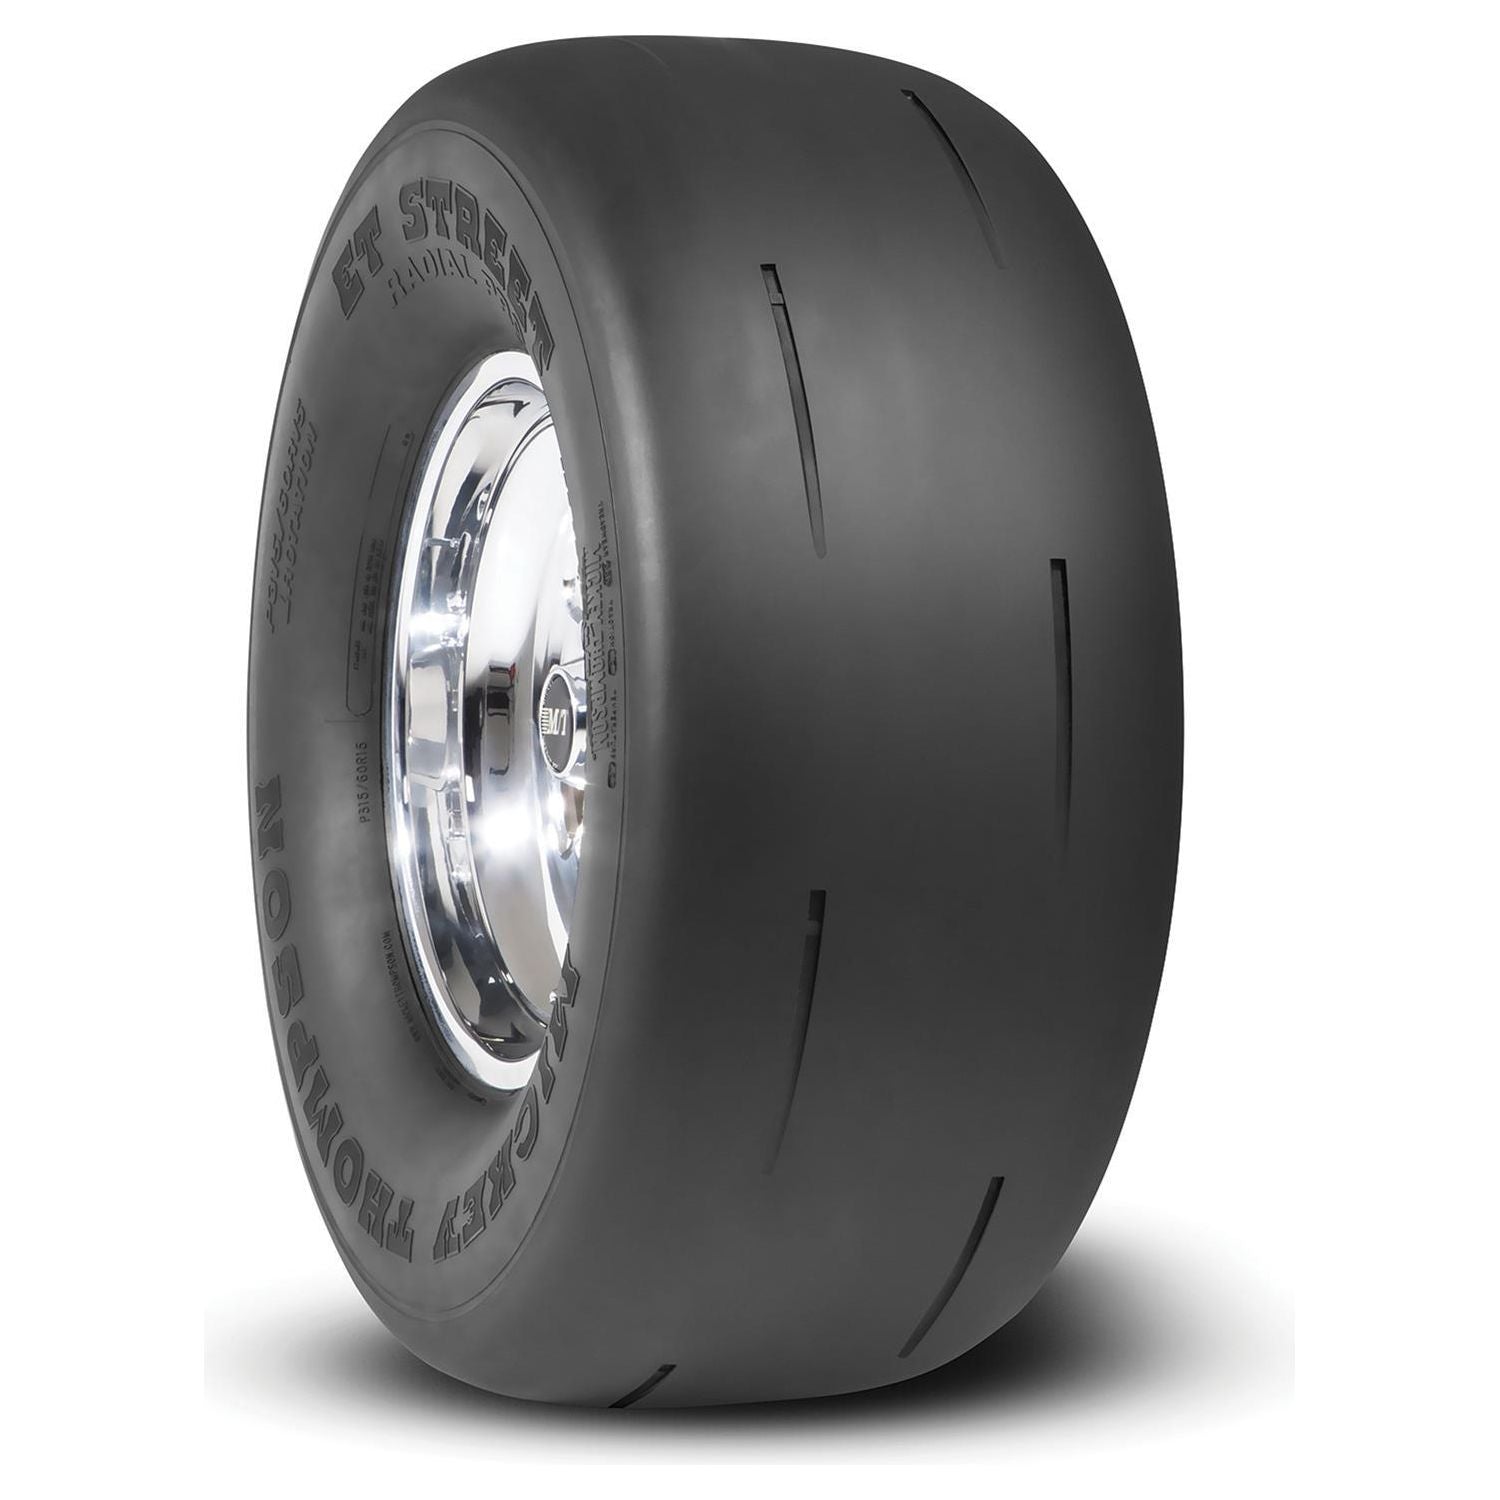 P315/60R15 ET Street Radial Tire